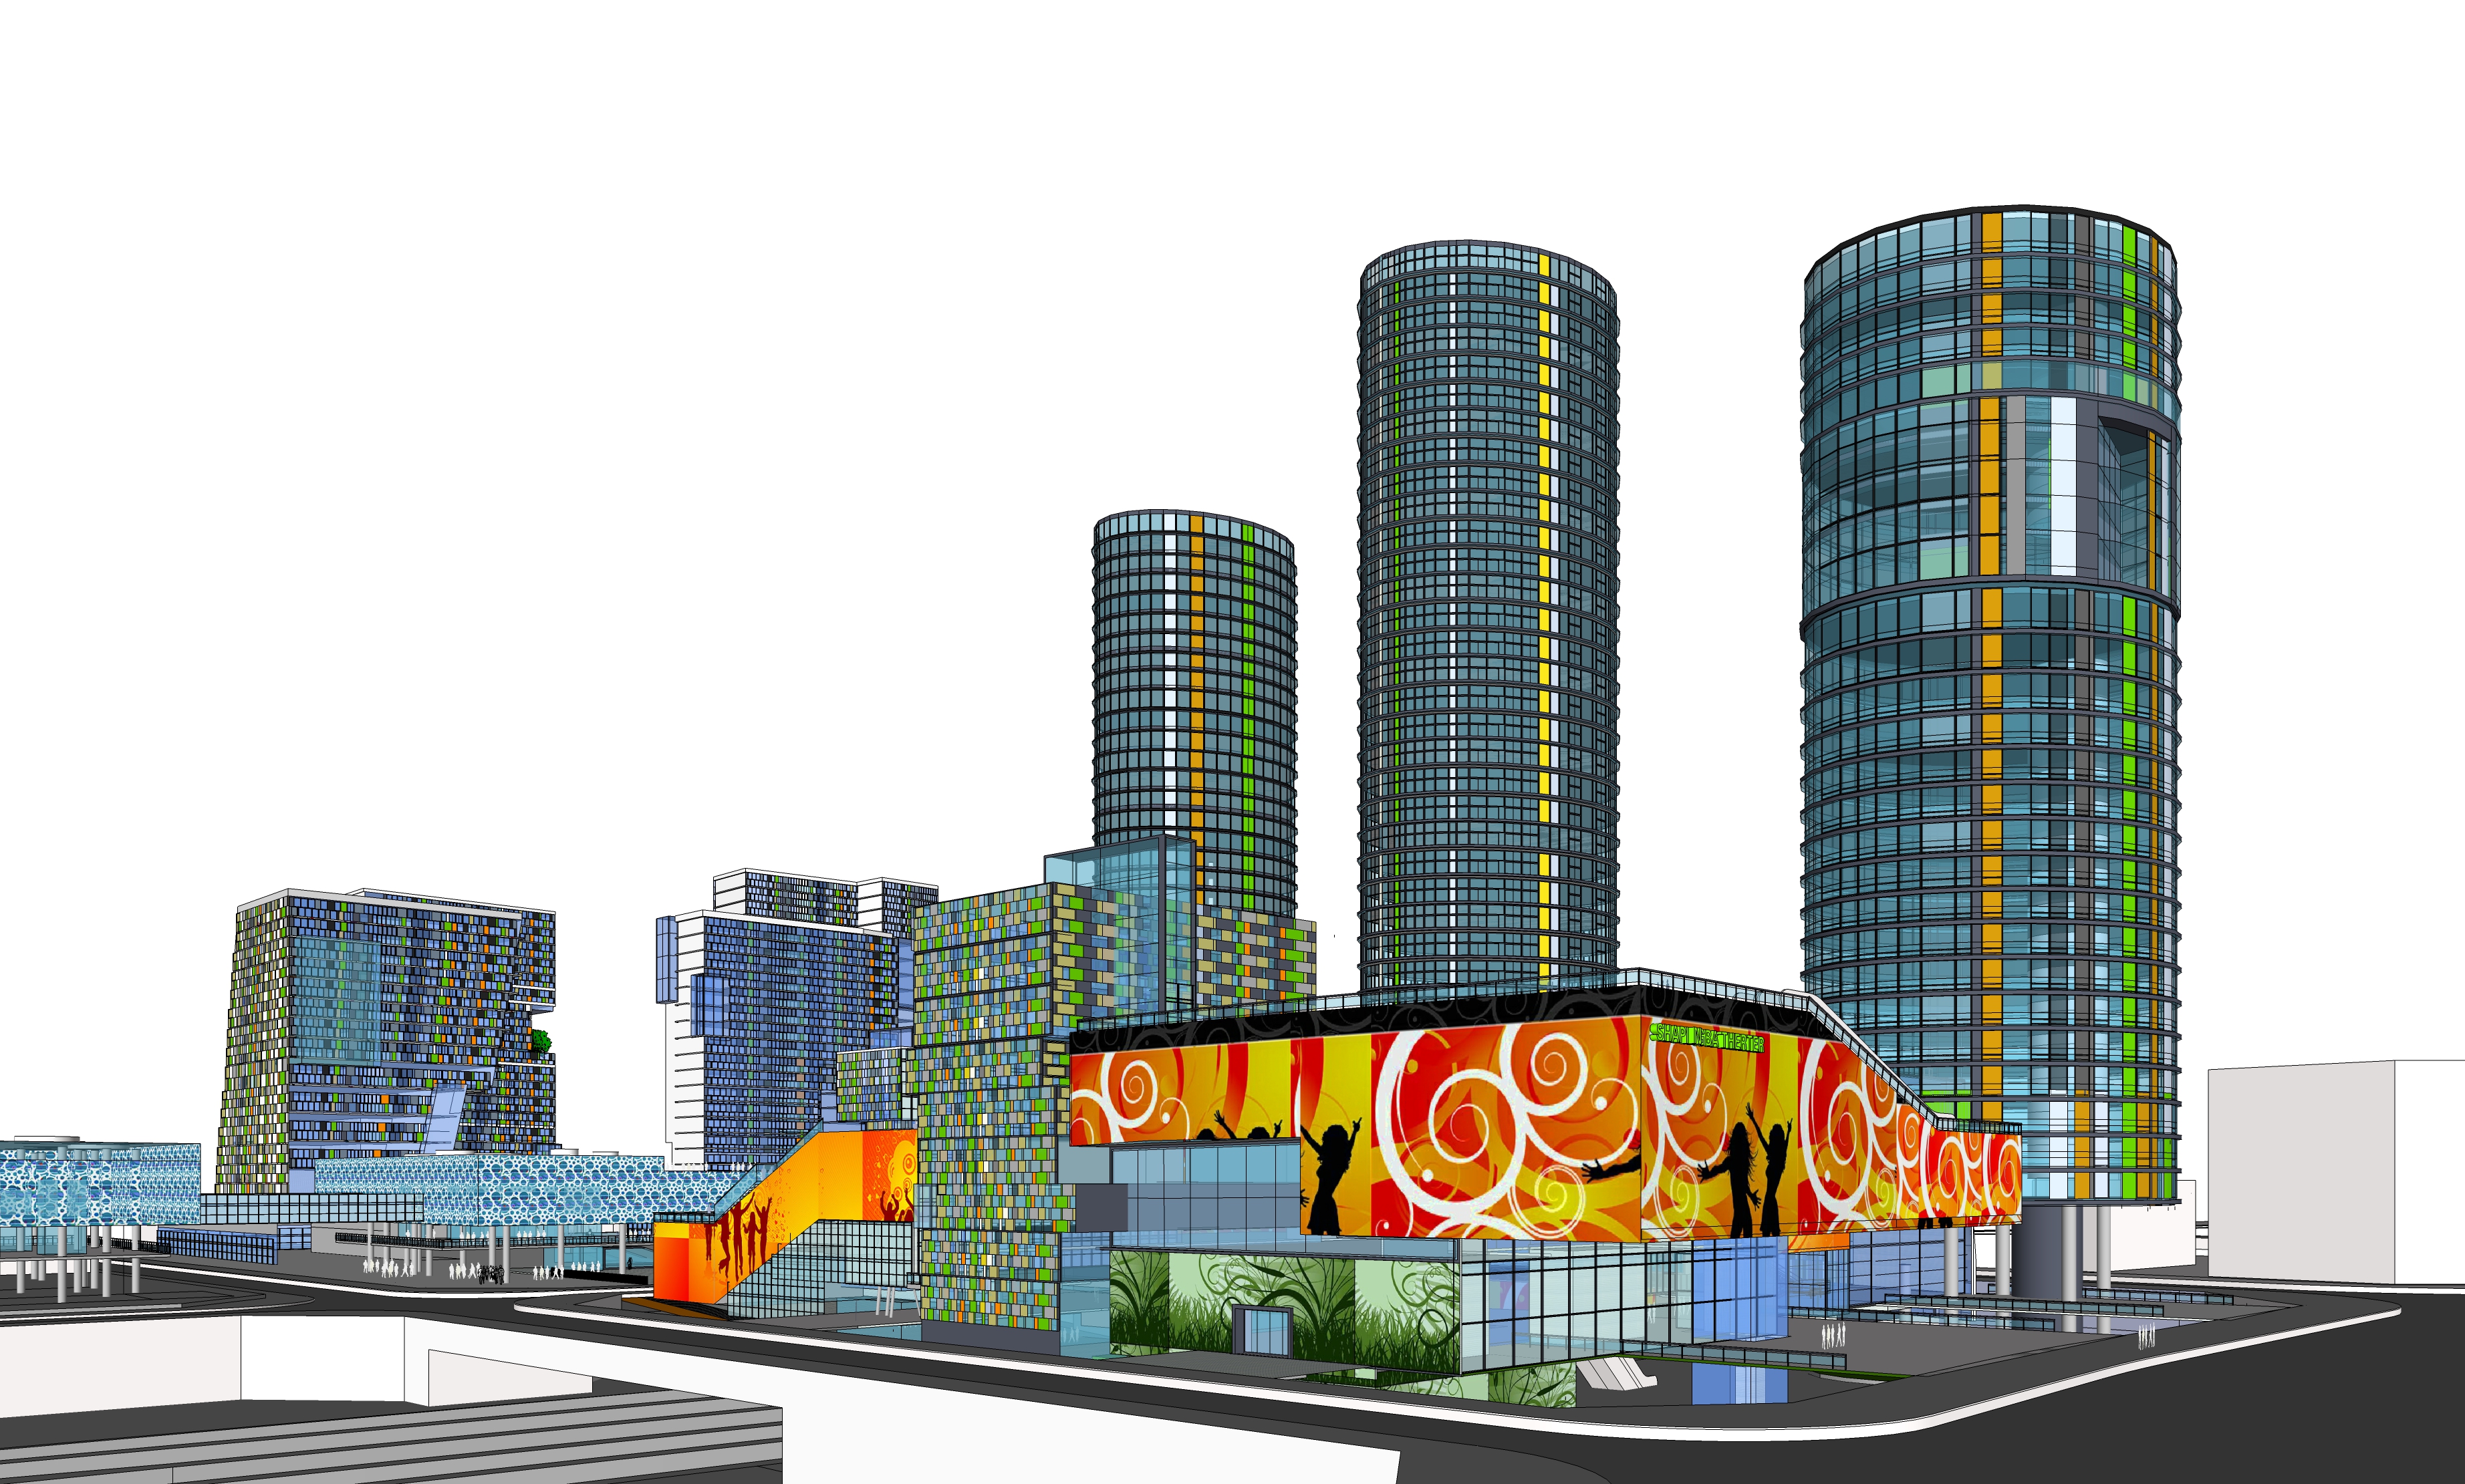 现代风格城市综合体设计方案sketchup模型